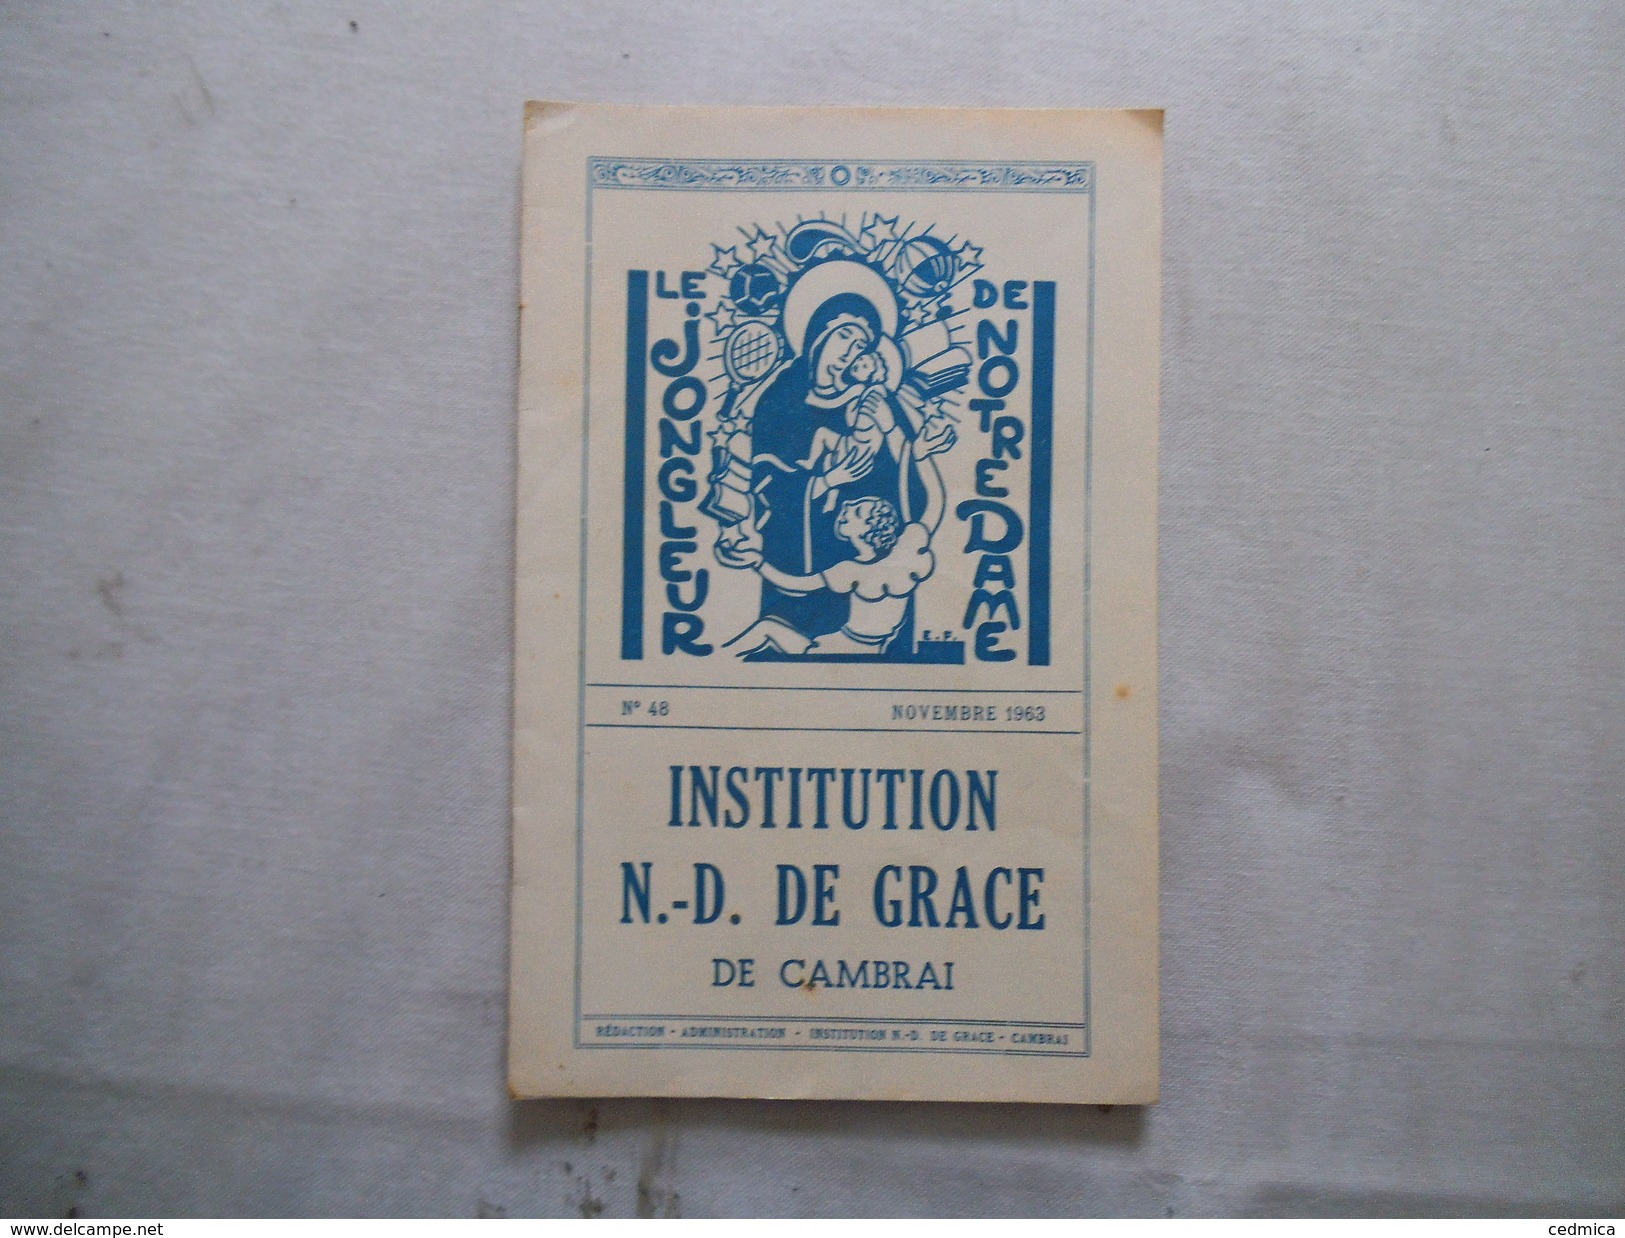 CAMBRAI INSTITUTION NOTRE-DAME DE GRACE LE JONGLEUR DE NOTRE DAME N°48 NOVEMBRE 1963 - Religion &  Esoterik